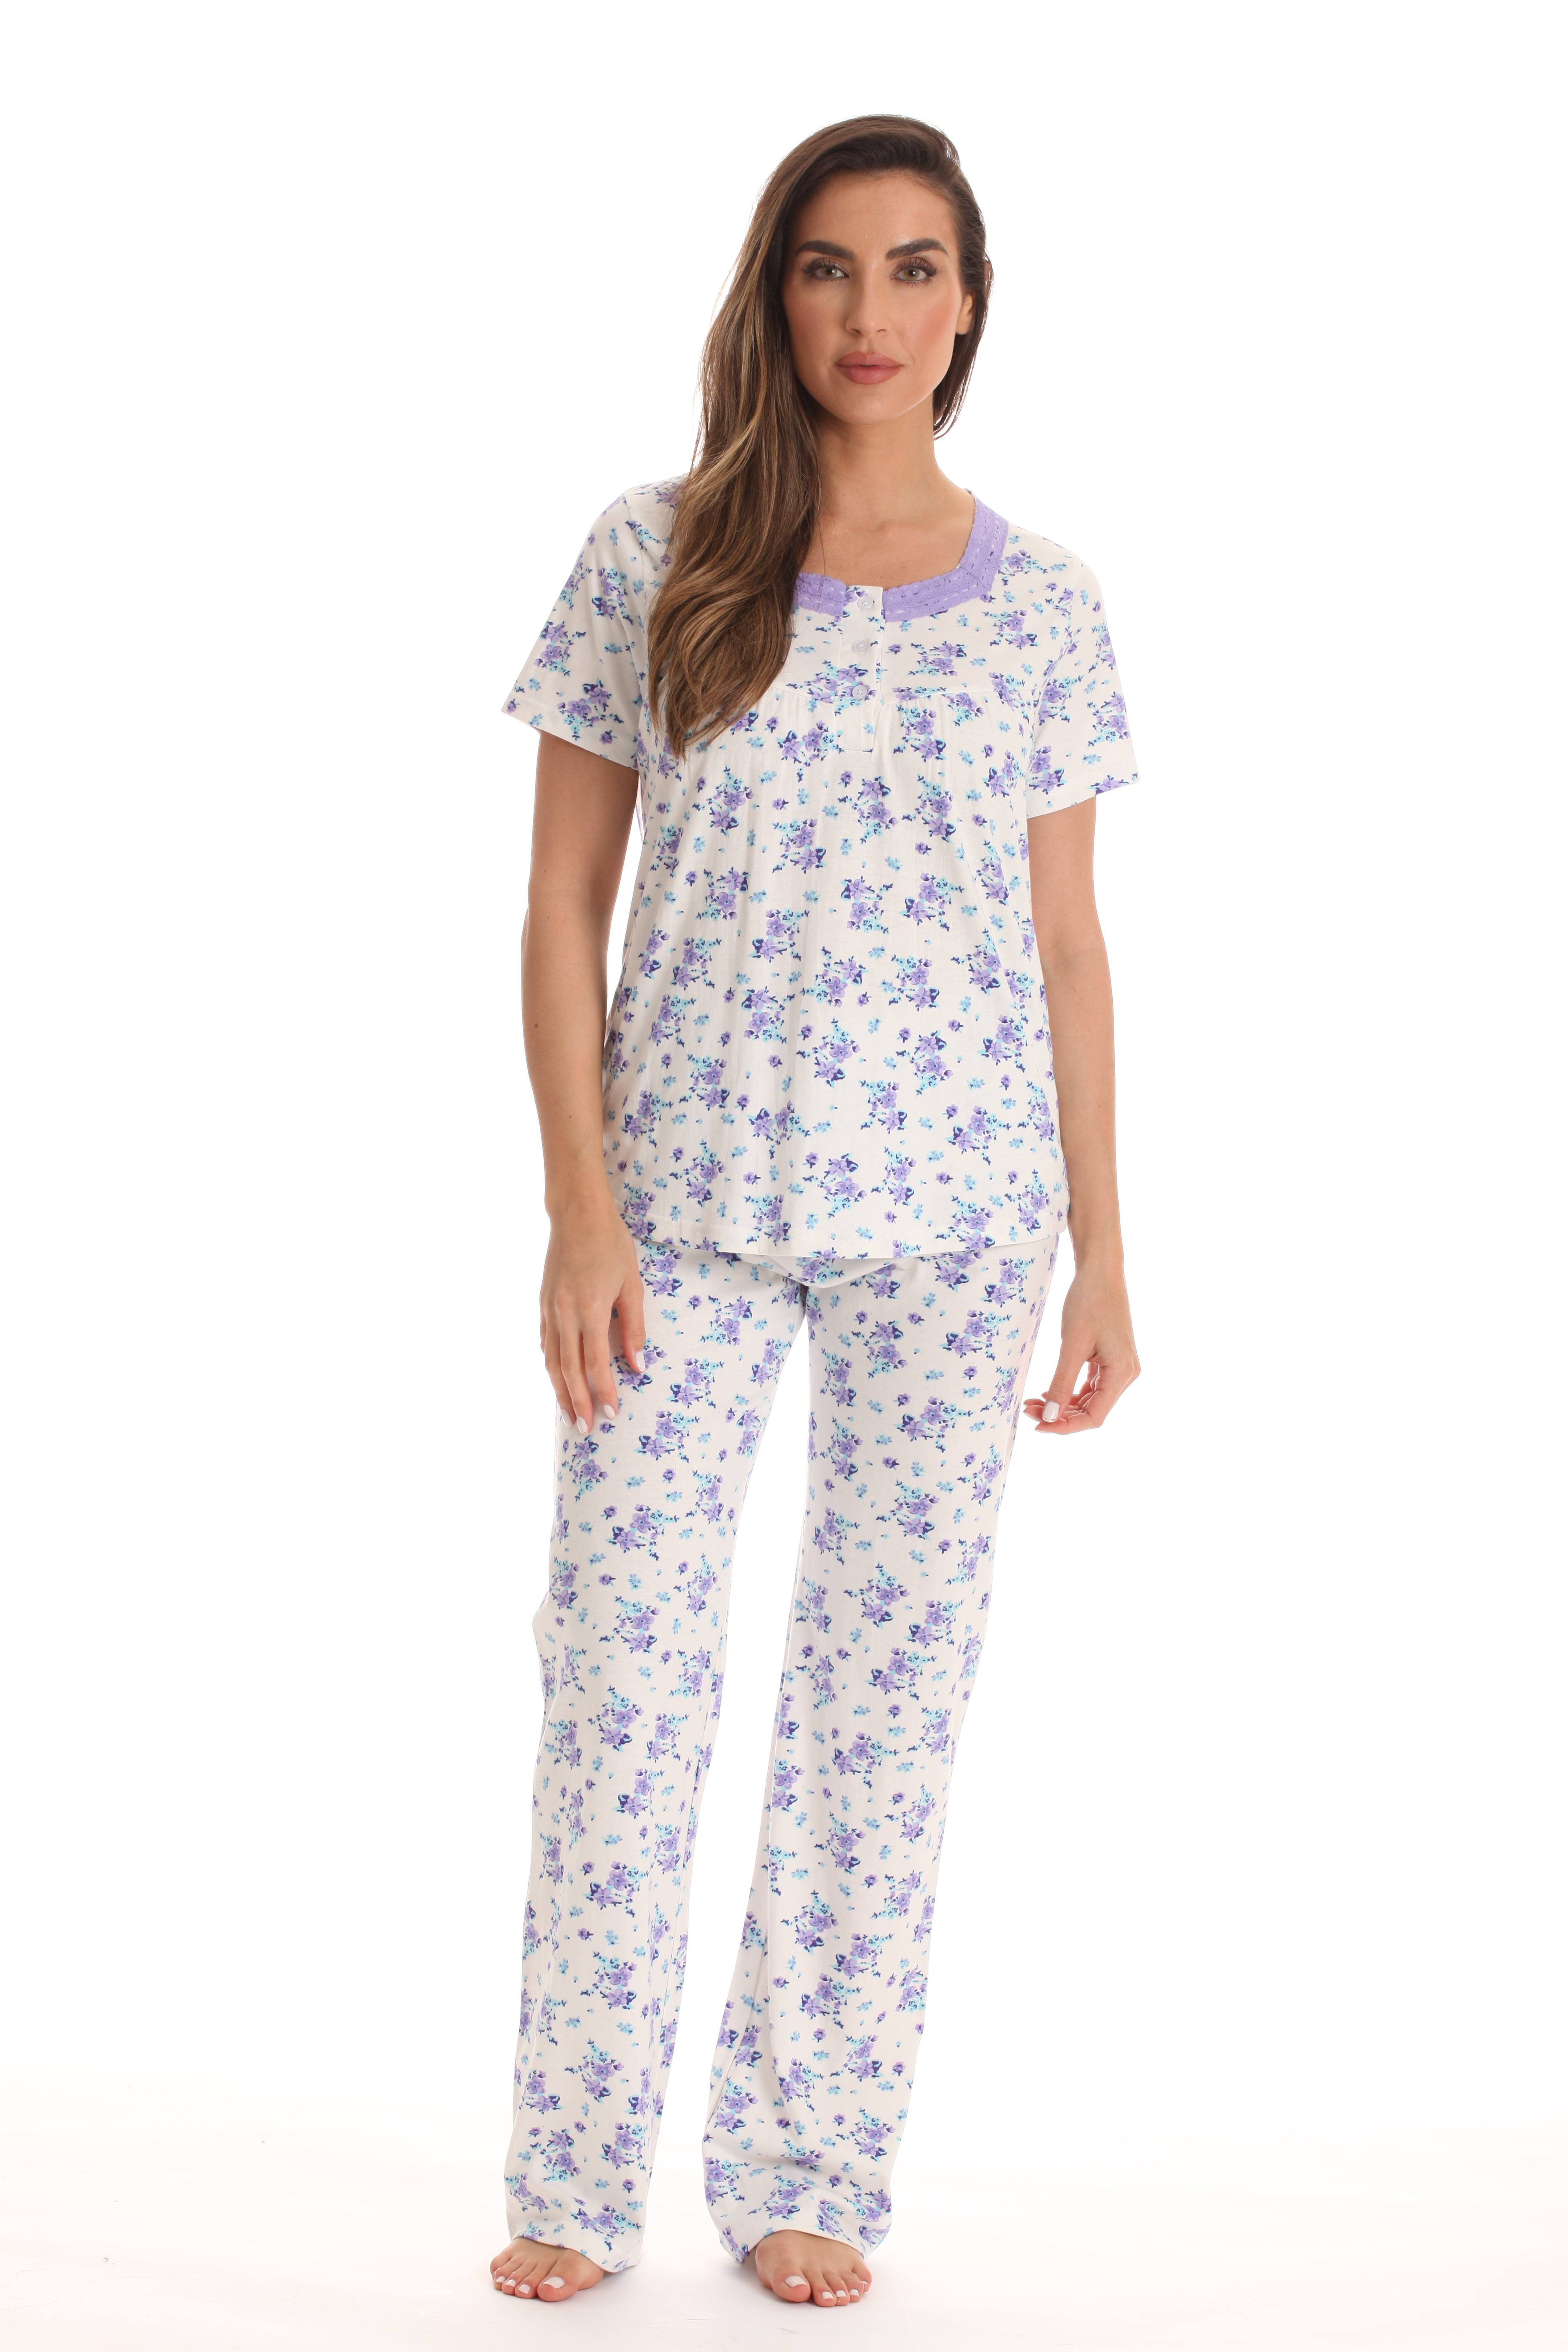 Dreamcrest 100% Cotton Pajama Pant Set for Women (Purple, 2X) - Walmart.com